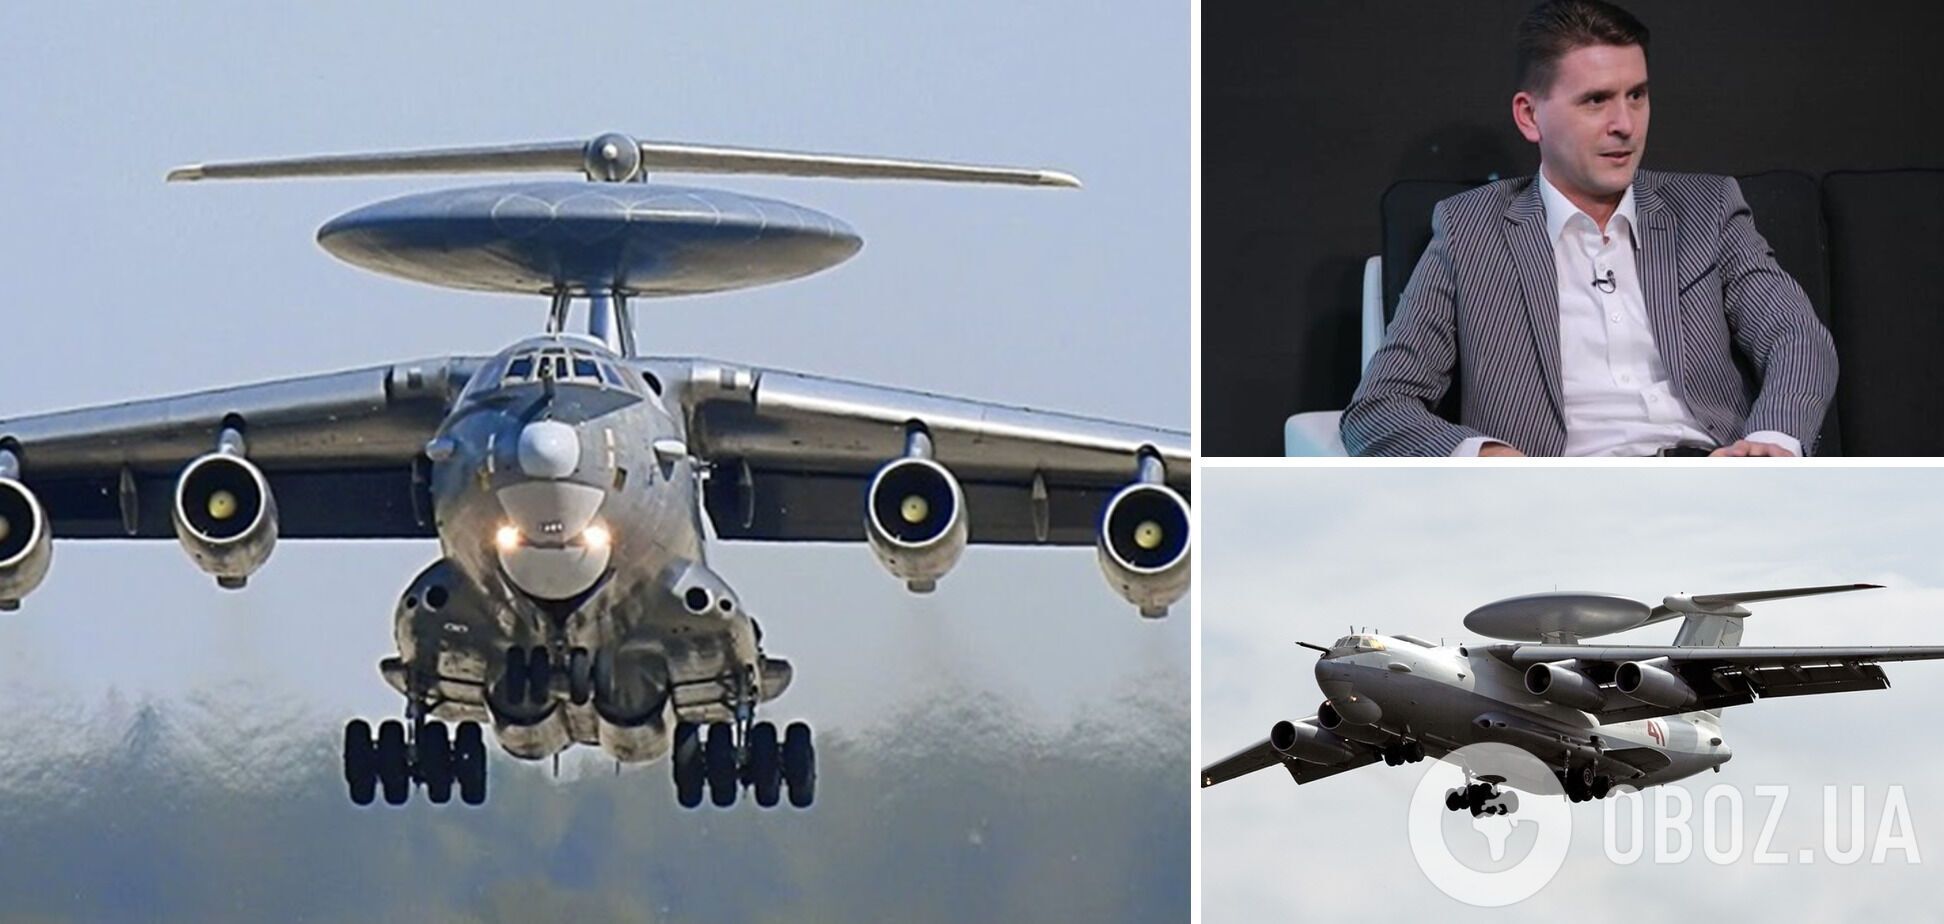 'Это уникальный самолет': Коваленко объяснил, что означает для России потеря самолета А-50